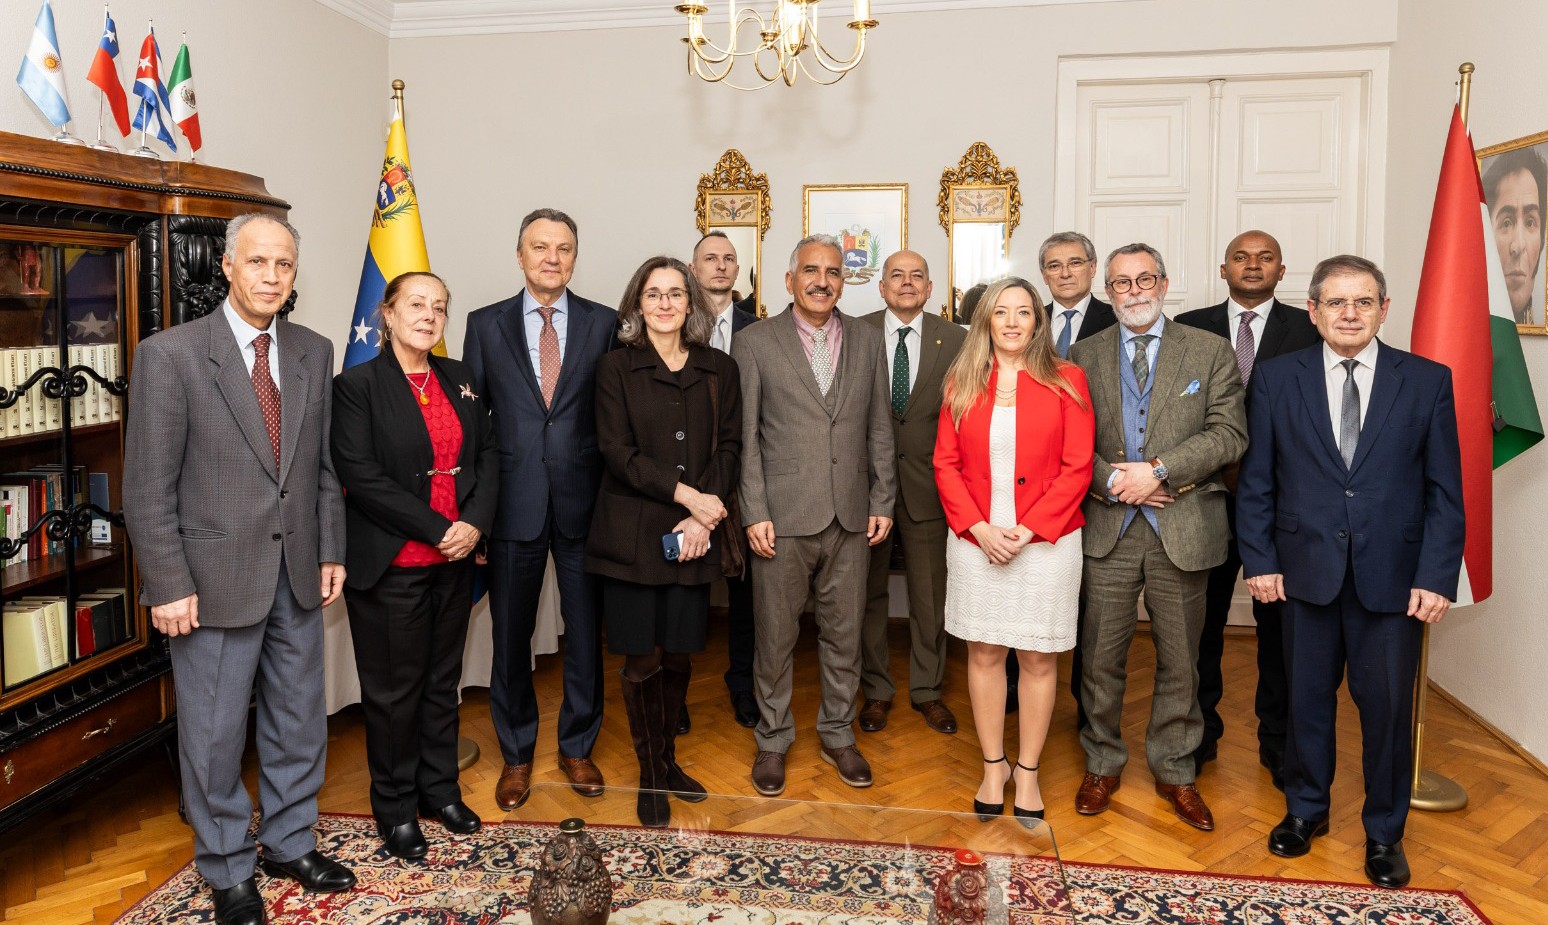 Embajada de Venezuela en Hungría conmemora primeros 25 años de la Revolución Bolivariana